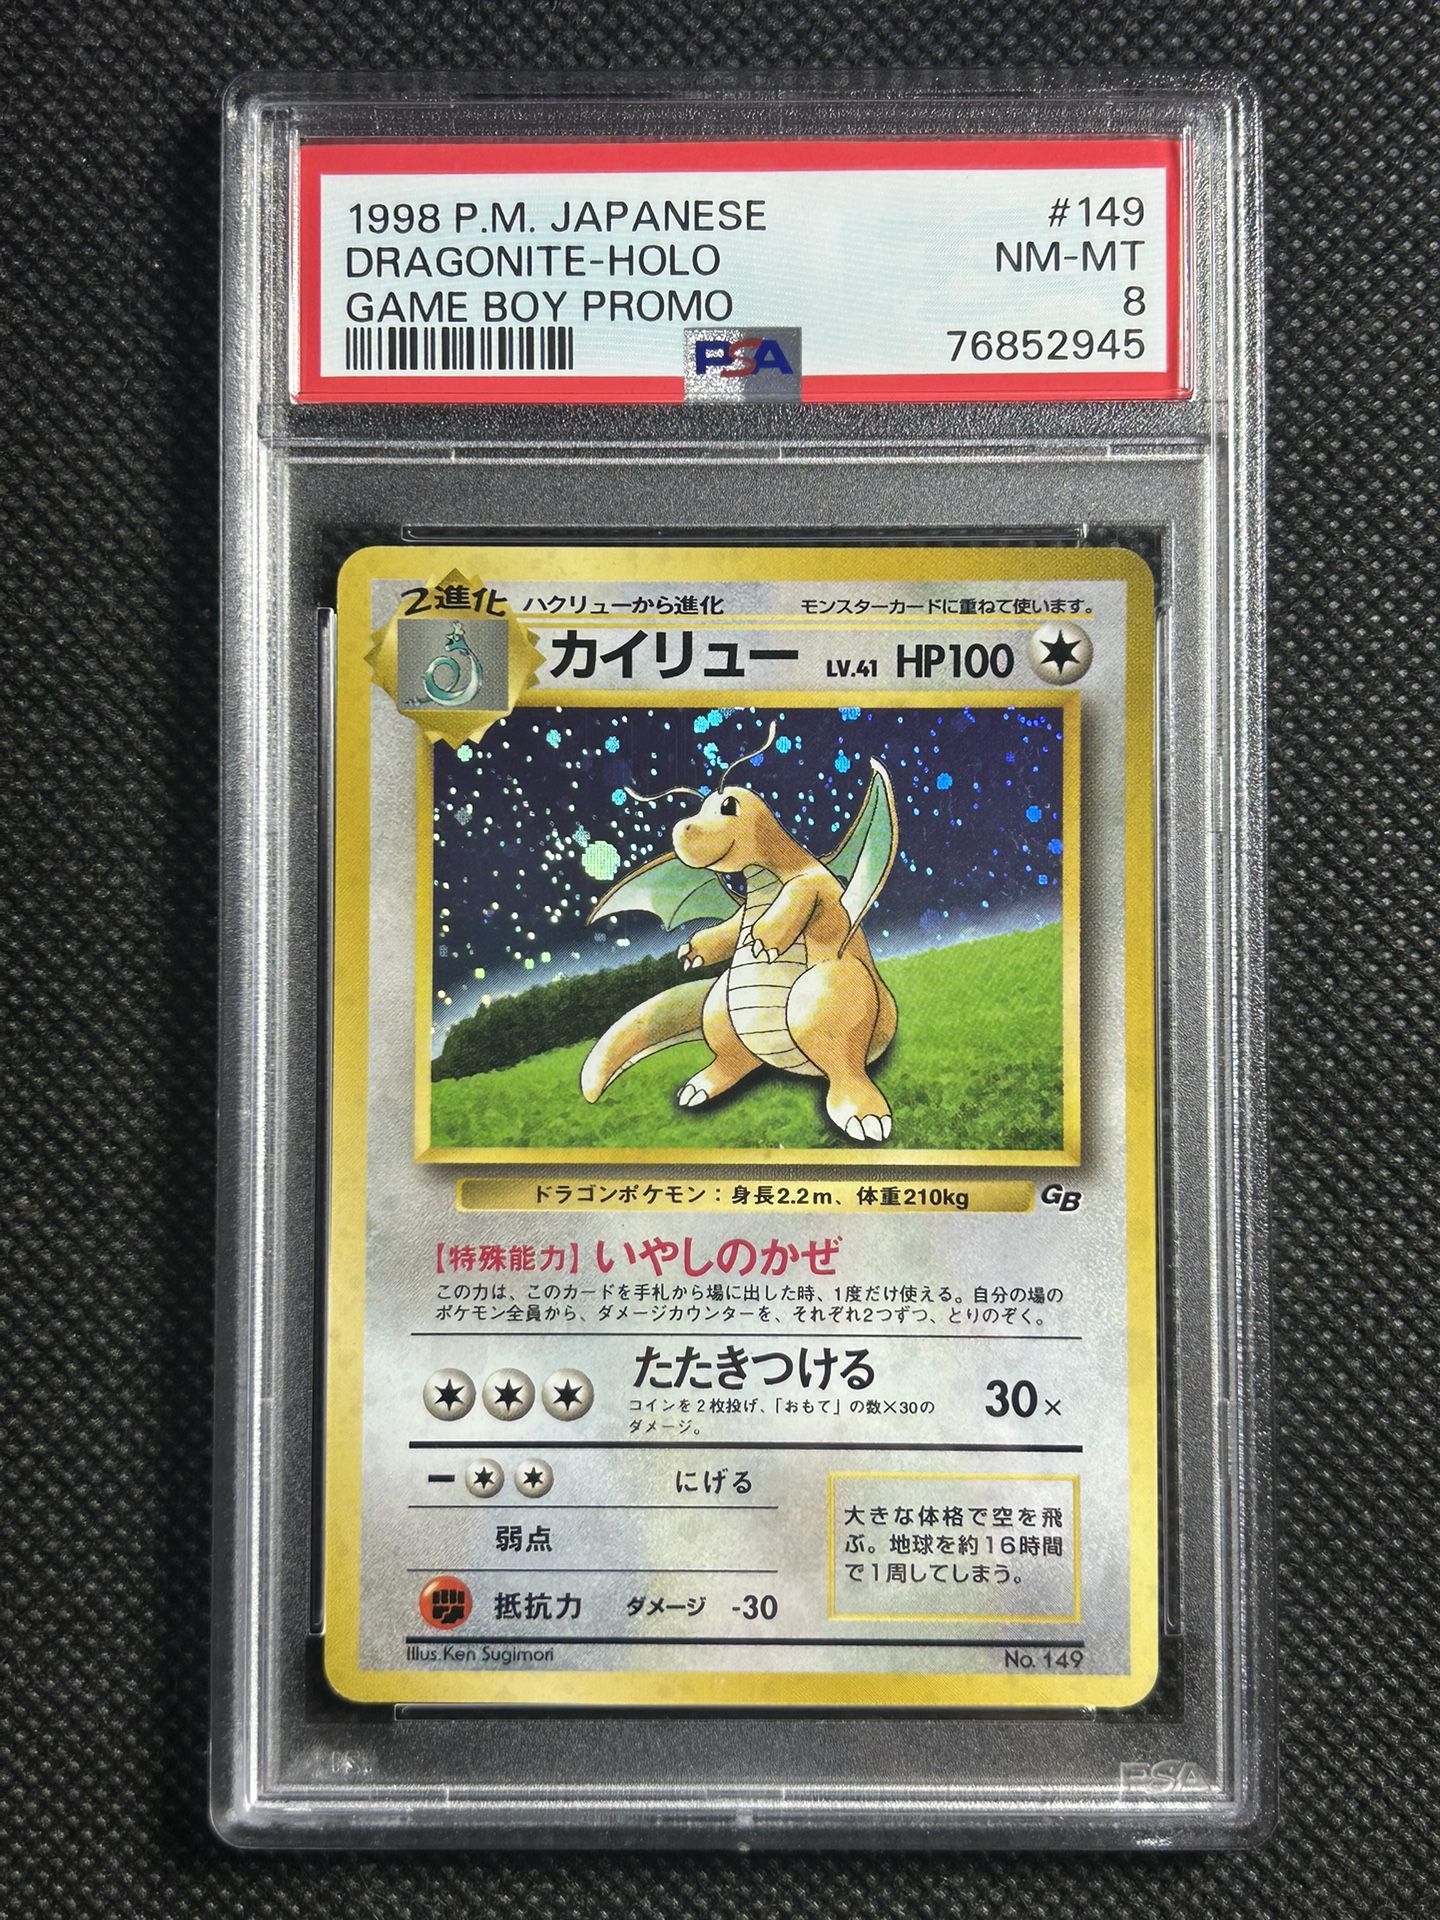 PSA 8 Dragonite No. 149 Game Boy Promo Holo 1998 Japanese Pokemon Card NM MINT